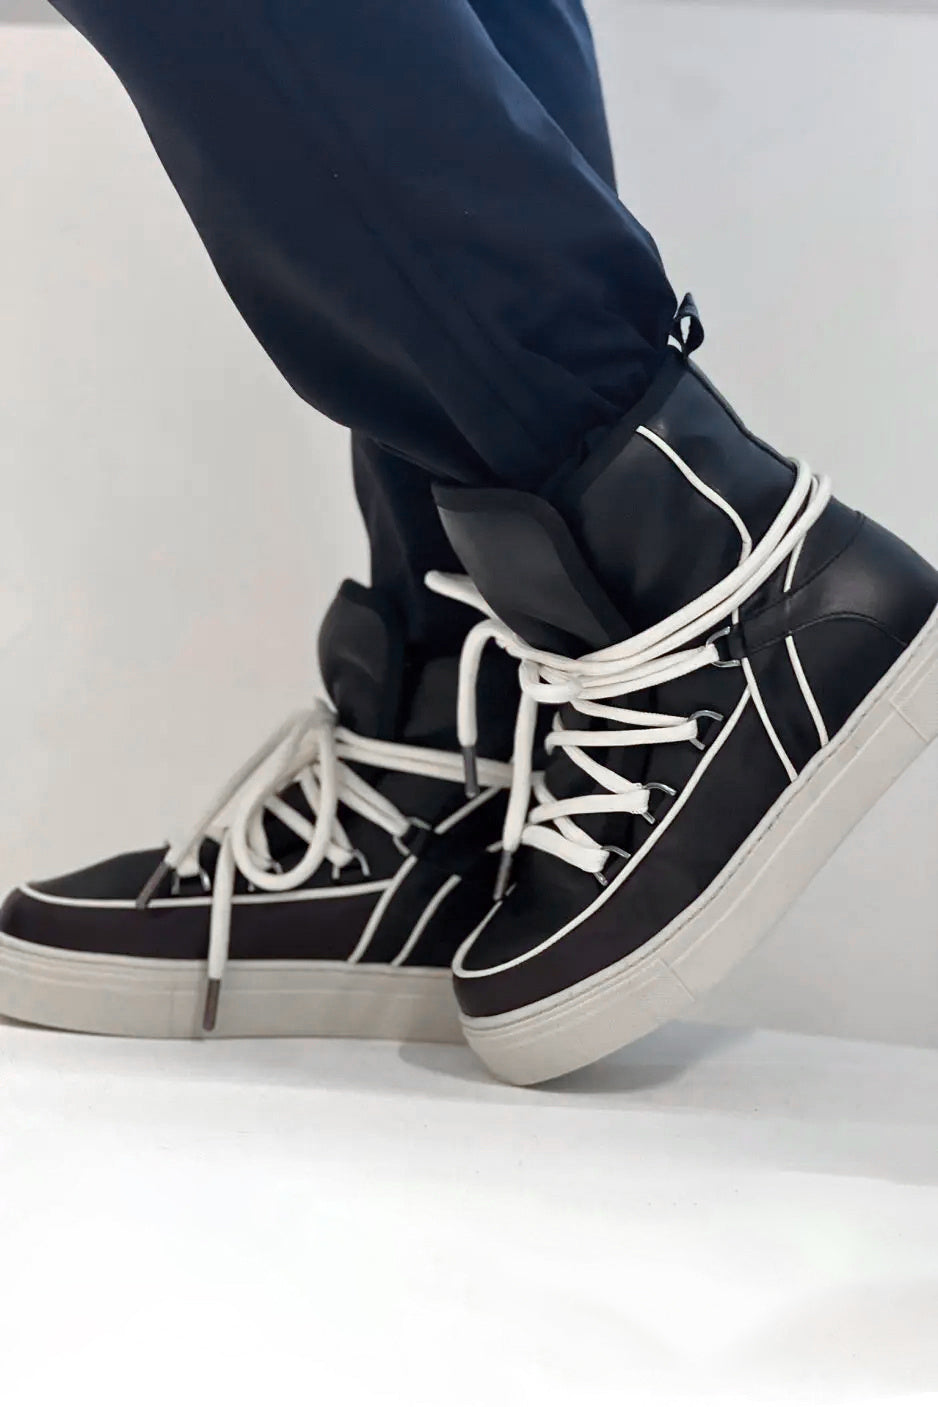 Mouton Sneaker Napa - Black/White Trim